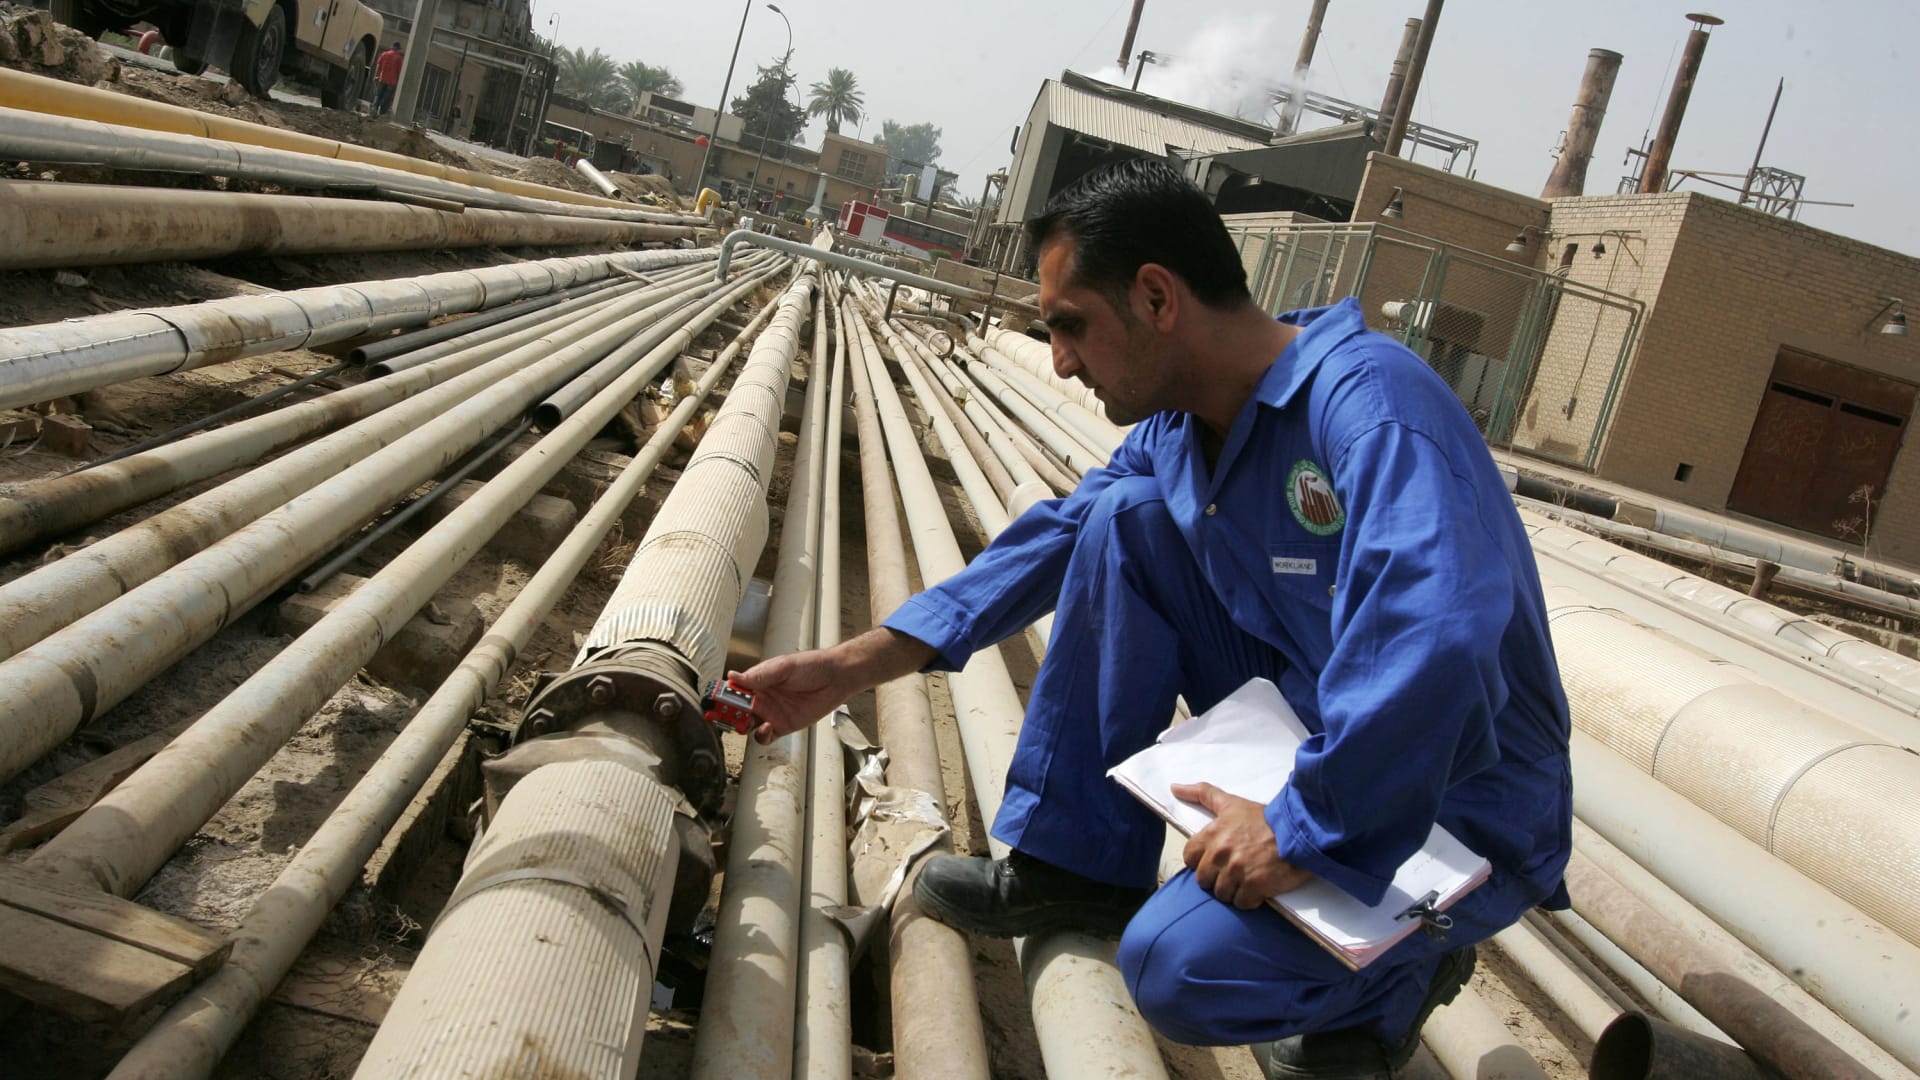 دول عربية تزود أوروبا بالنفط والغاز الطبيعي.. وهذه حصتها من الصادرات